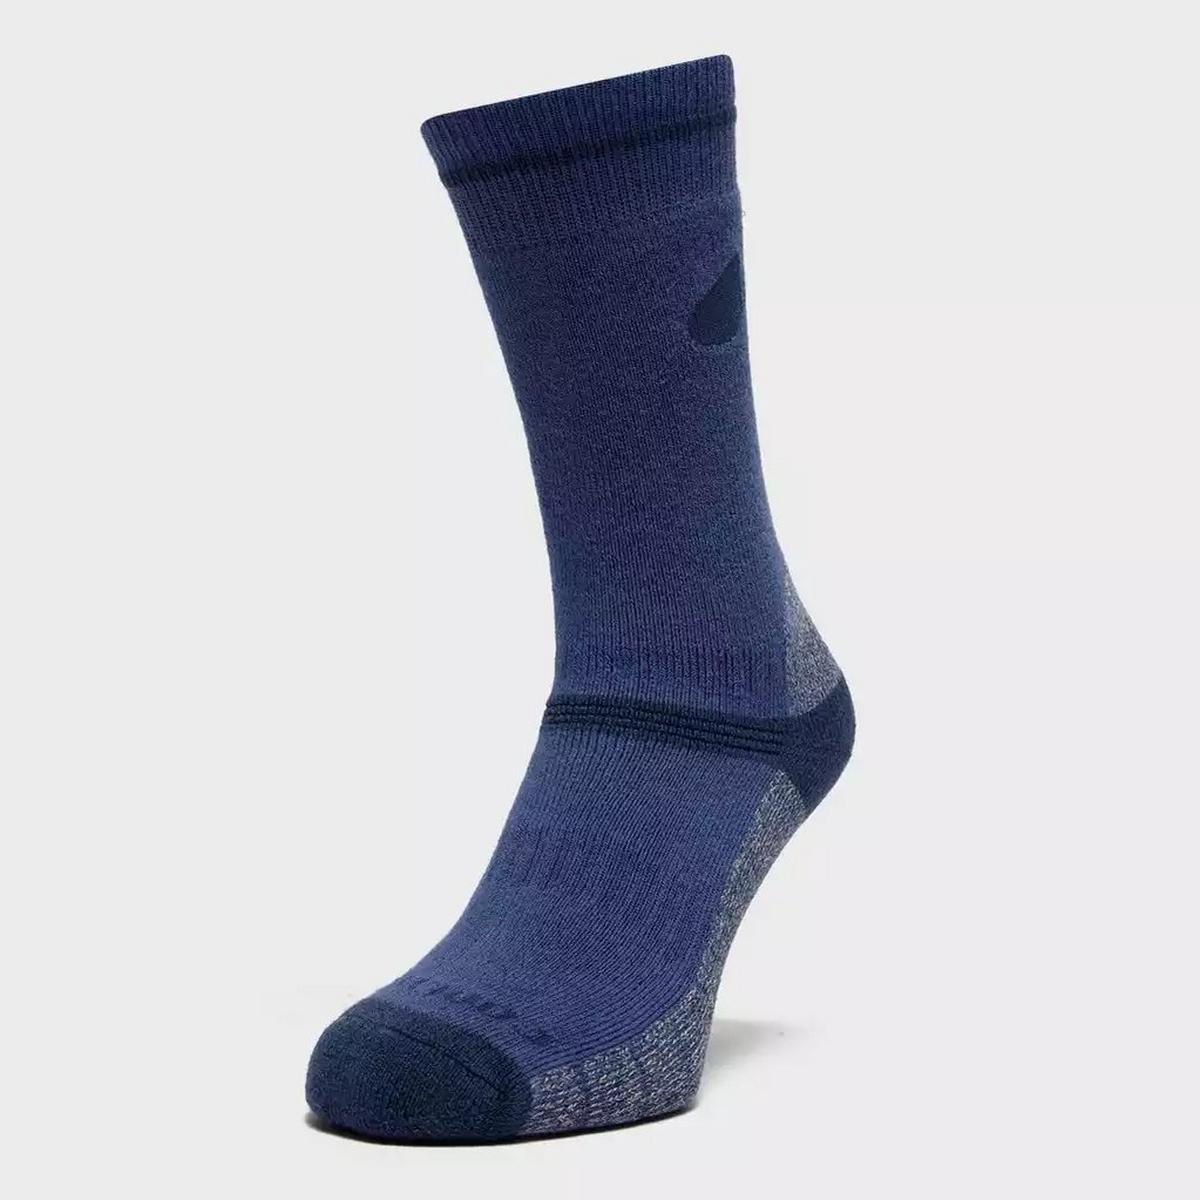 Peter Storm Women's Midweight Outdoor Socks 2 Pack - Blue